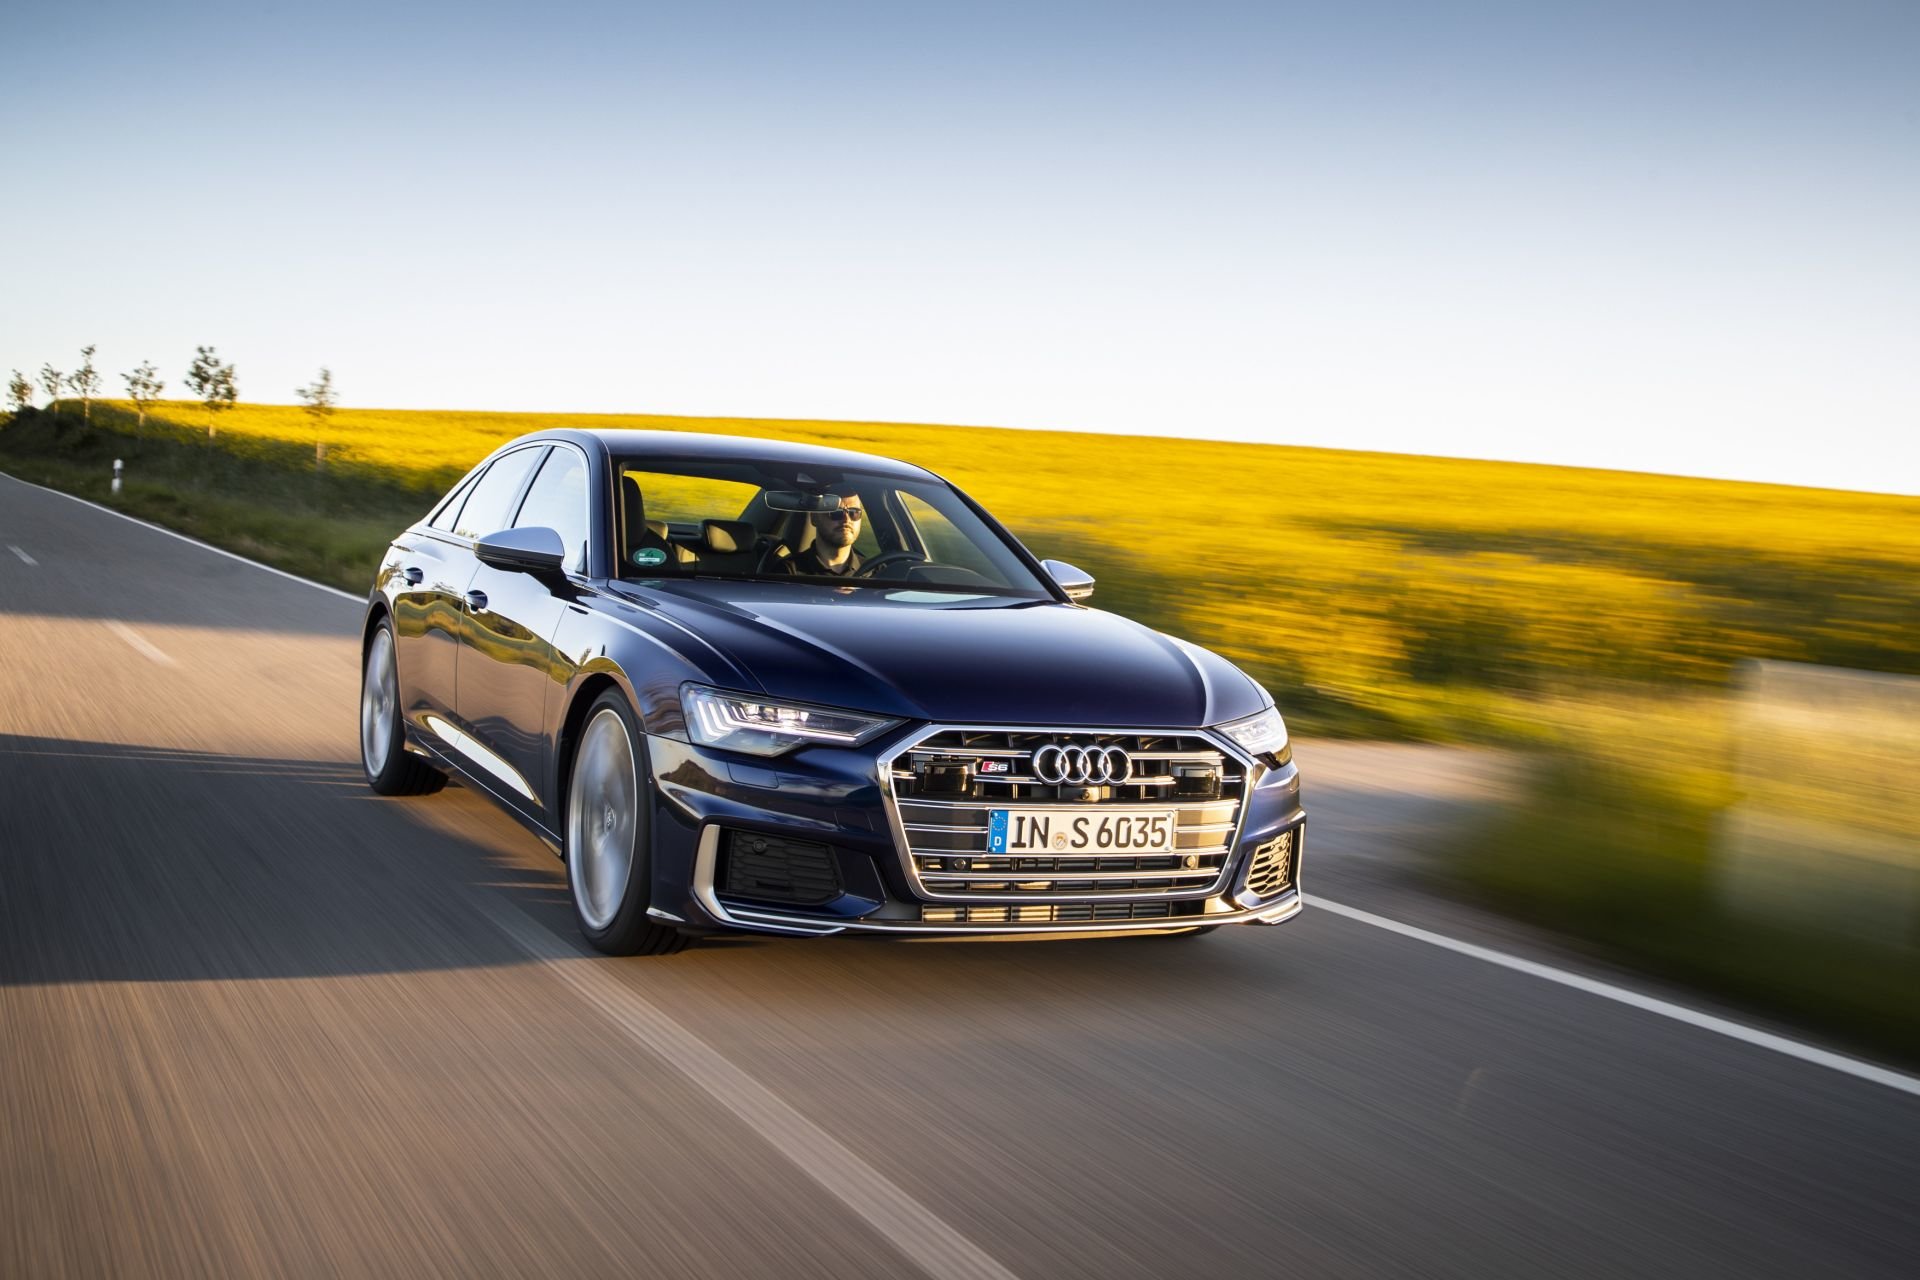 Modely Audi S TDI kombinují vysokou úroveň agility, spontánní nárůst výkonu a mohutnou hnací sílu v jakékoli jízdní situaci s nízkou spotřebou paliva a dlouhým dojezdem